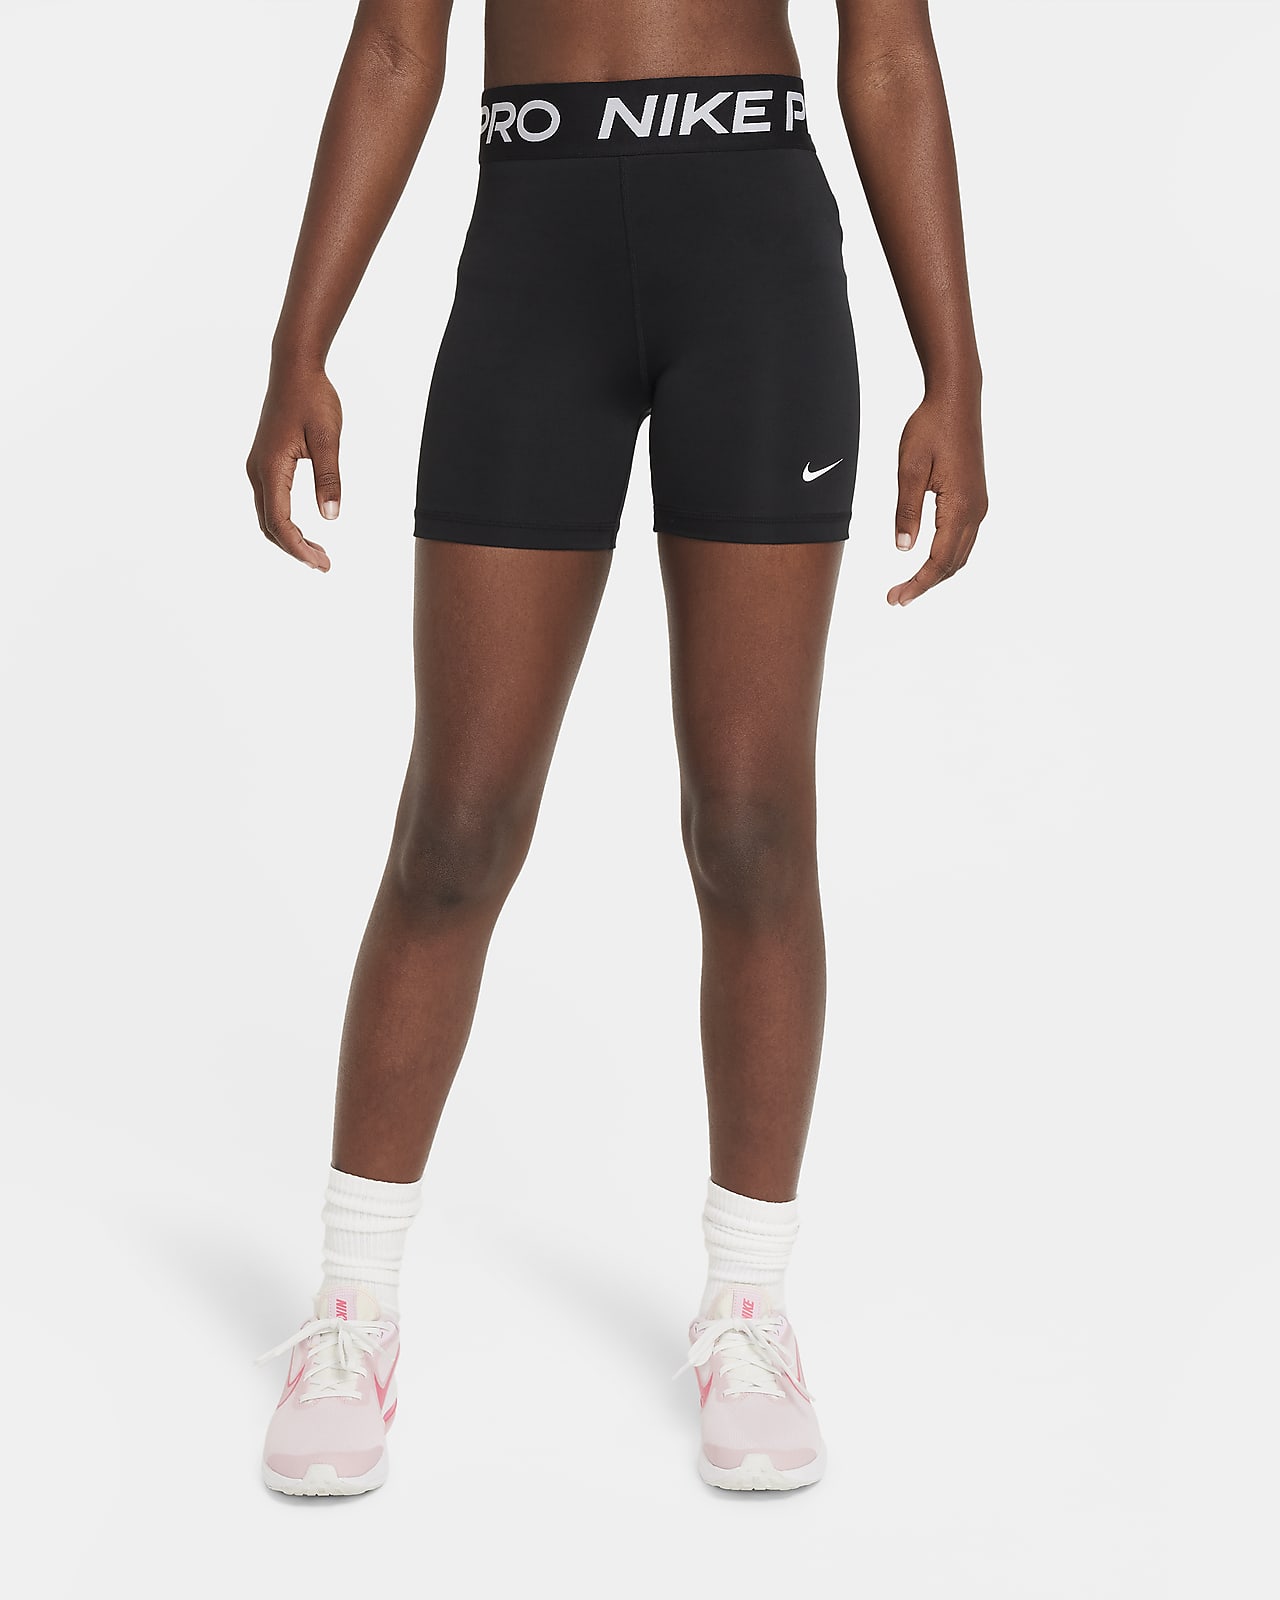 Shorts Nike Pro - Ragazza